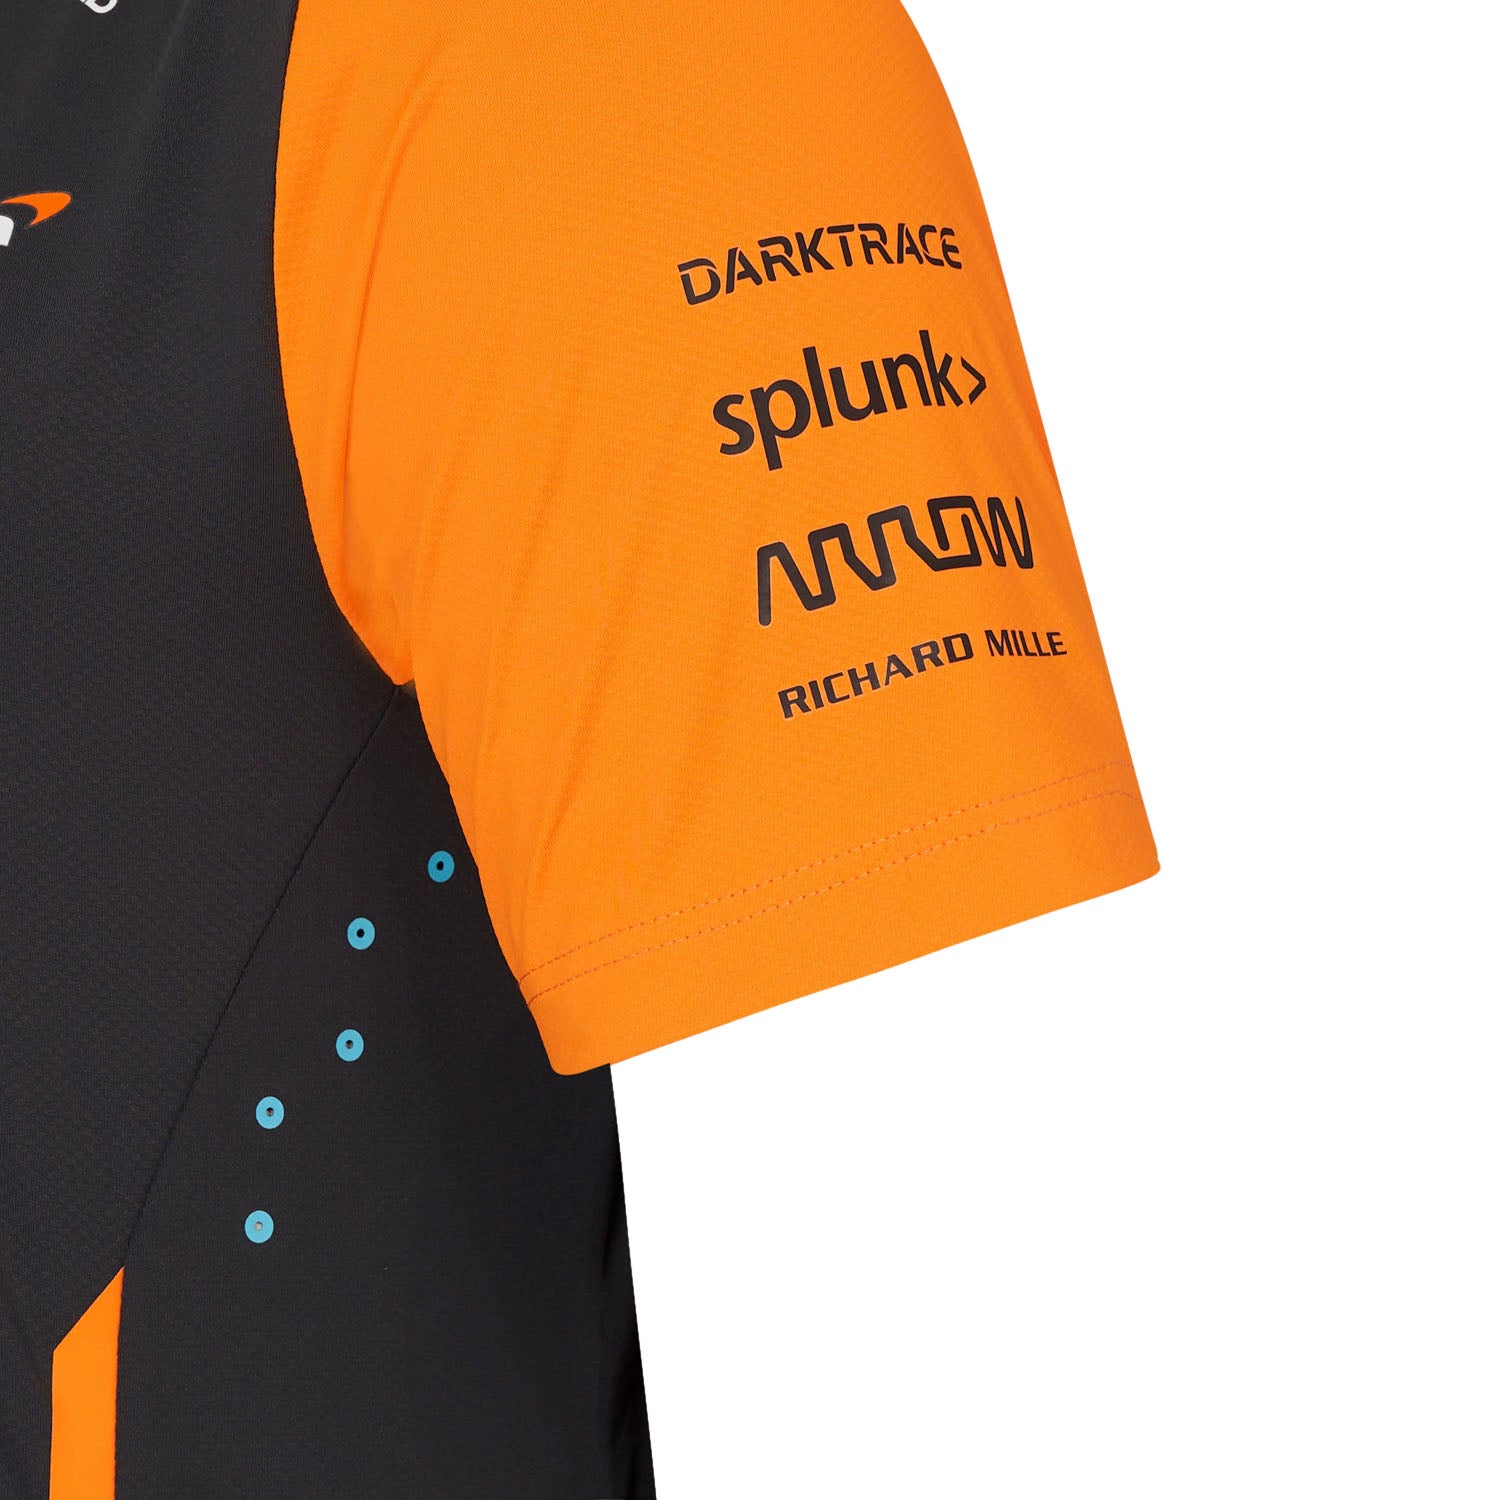 2024 Team T-Shirt - McLaren F1 - Fueler store